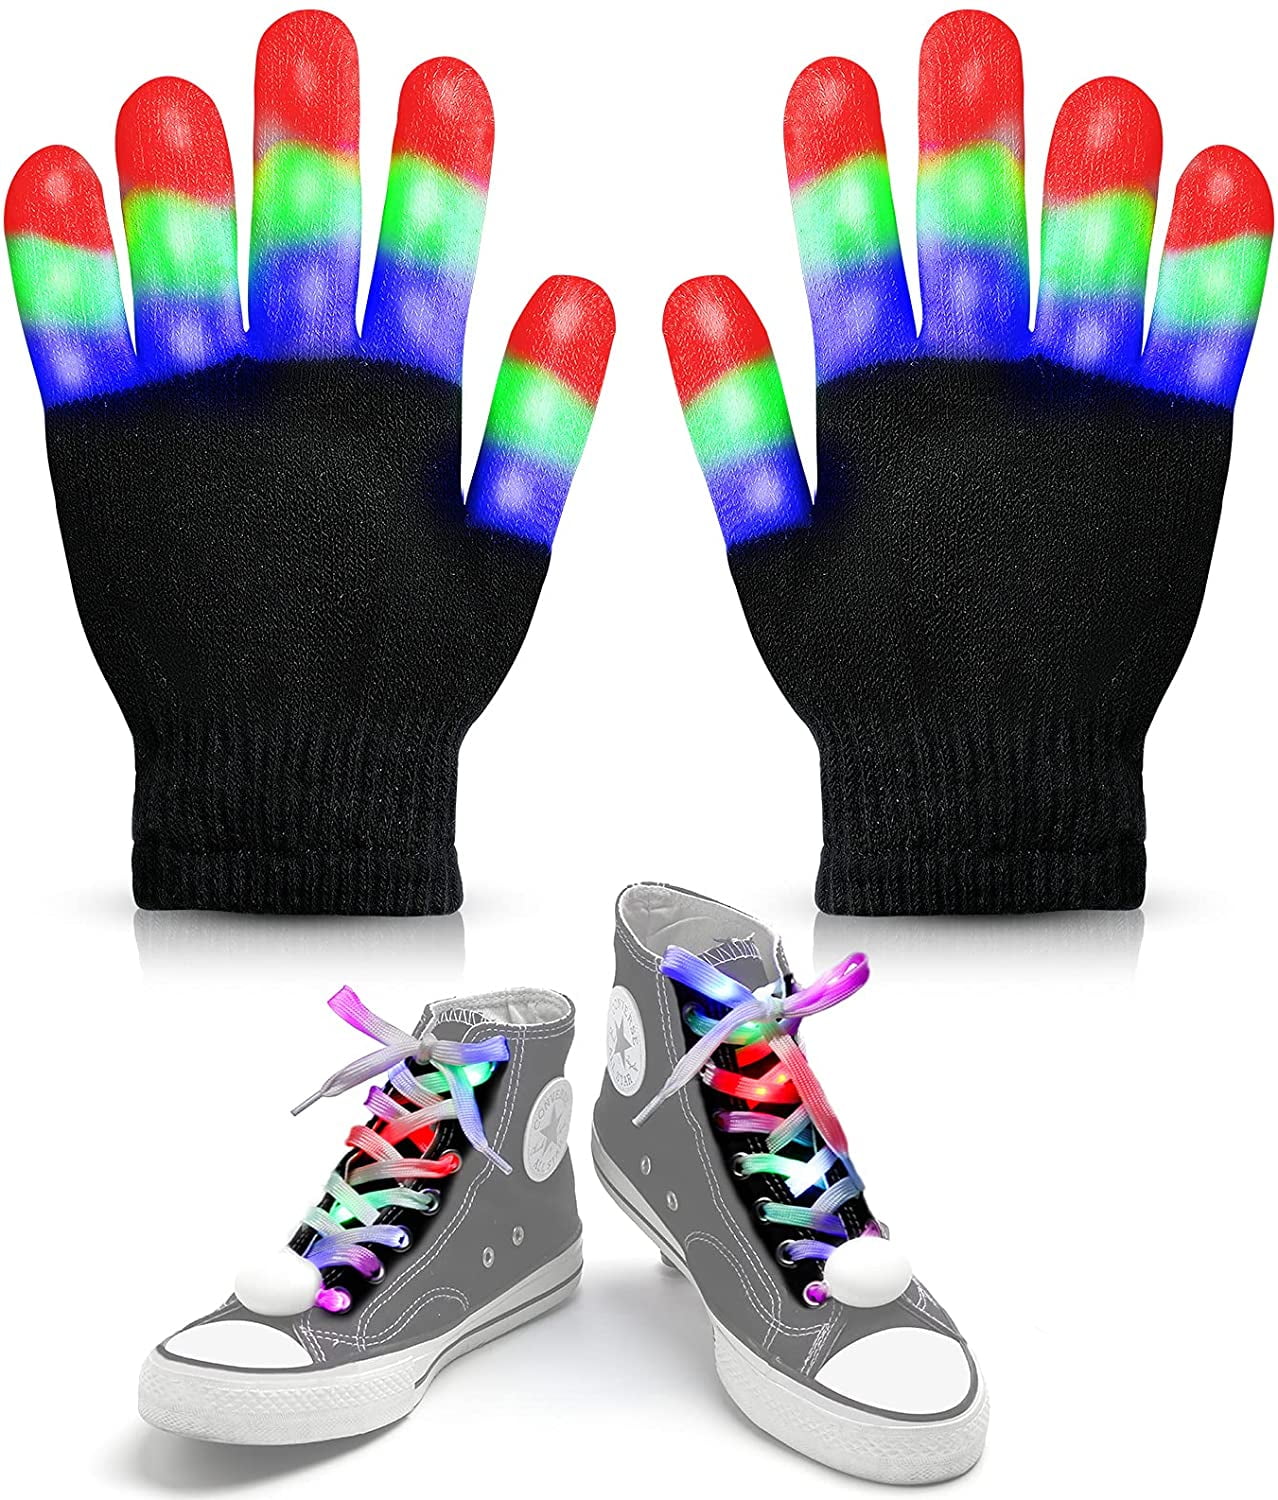 Popular Style LED Gloves,Led Shoelaces Set,Christmas Flashing Light Up Led Finger Gloves and Shoe Laces for Boys Girls